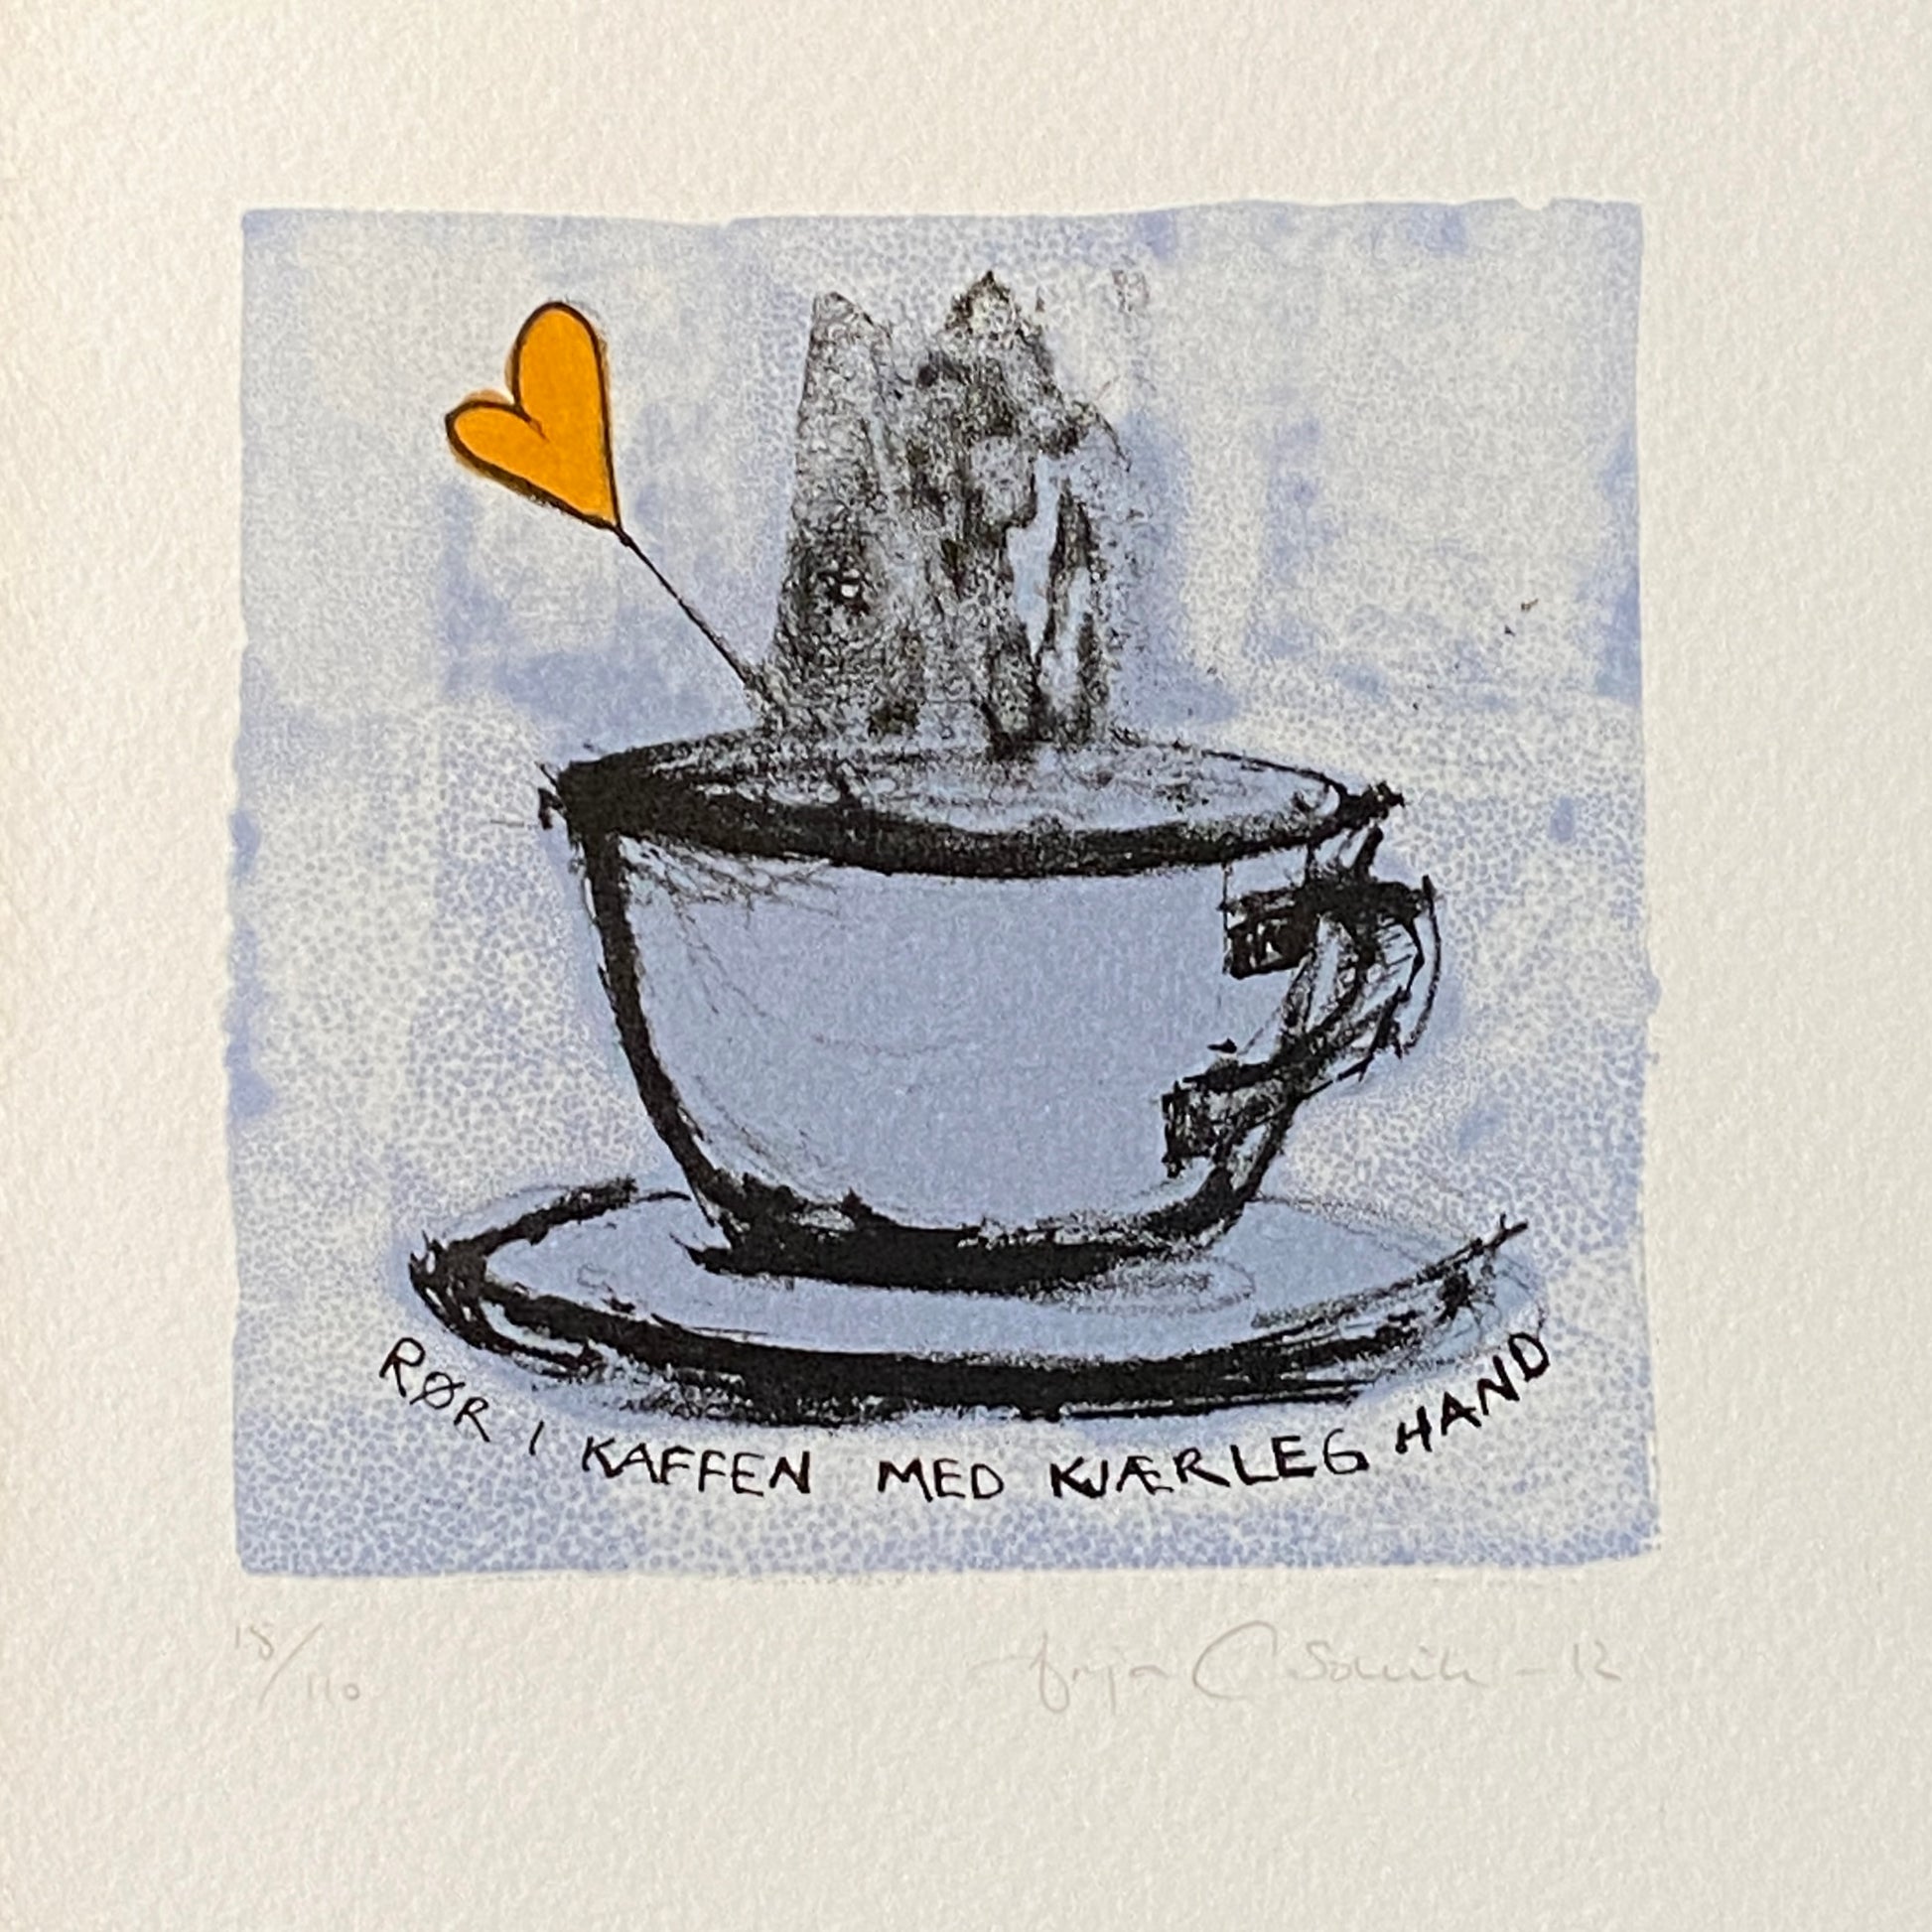 Rør i kaffen med kjærleg hand av Anja Cecilie Solvik - Galleri EKG AS